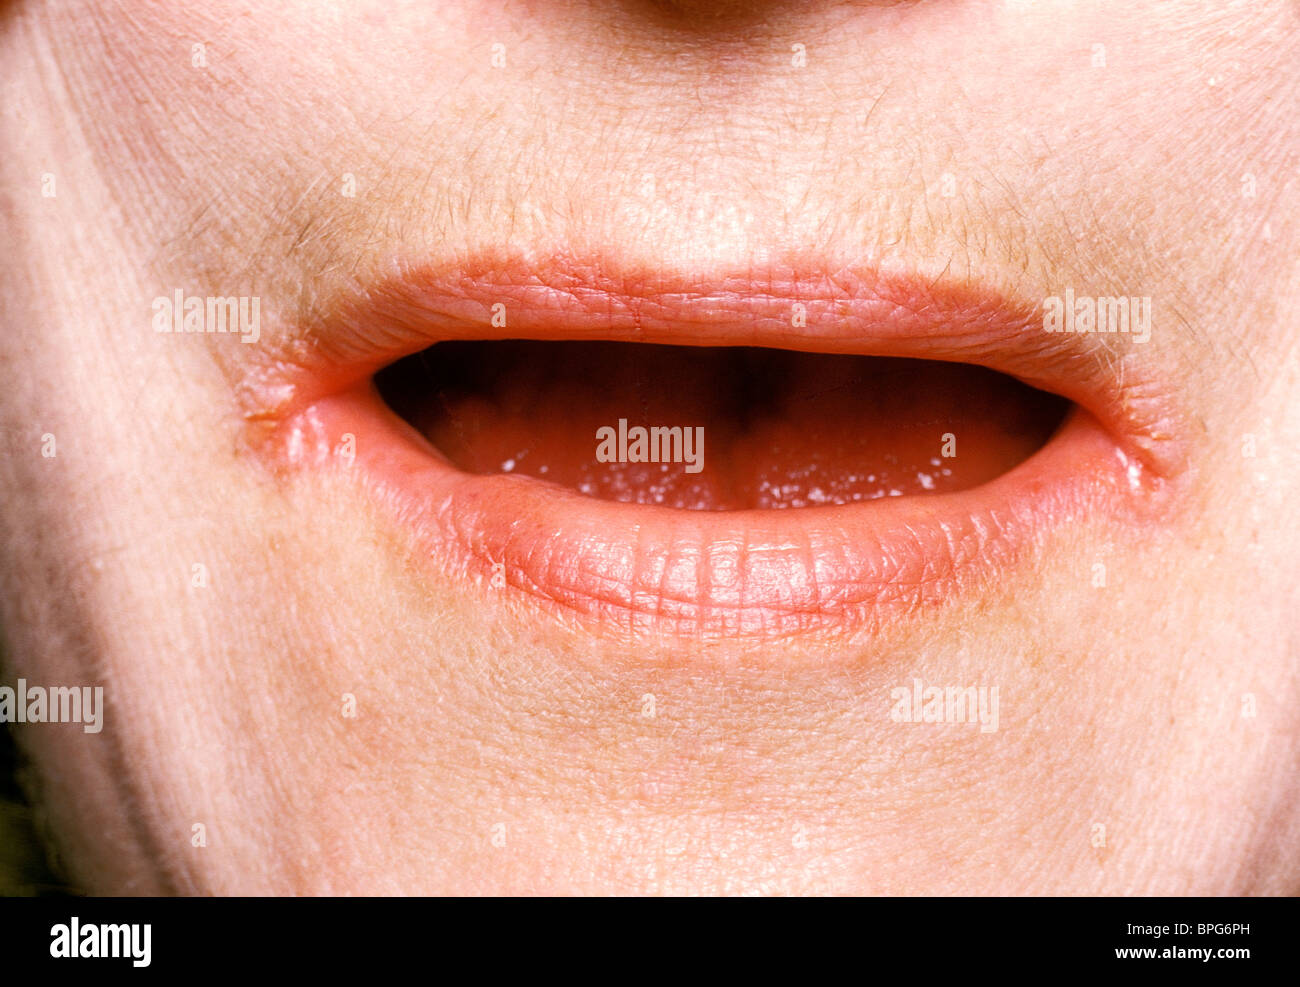 Femelle avec stomatite angulaire entraînant la fissuration et fractionnement des tissus à la jonction de la lèvres inférieure et supérieure. Banque D'Images